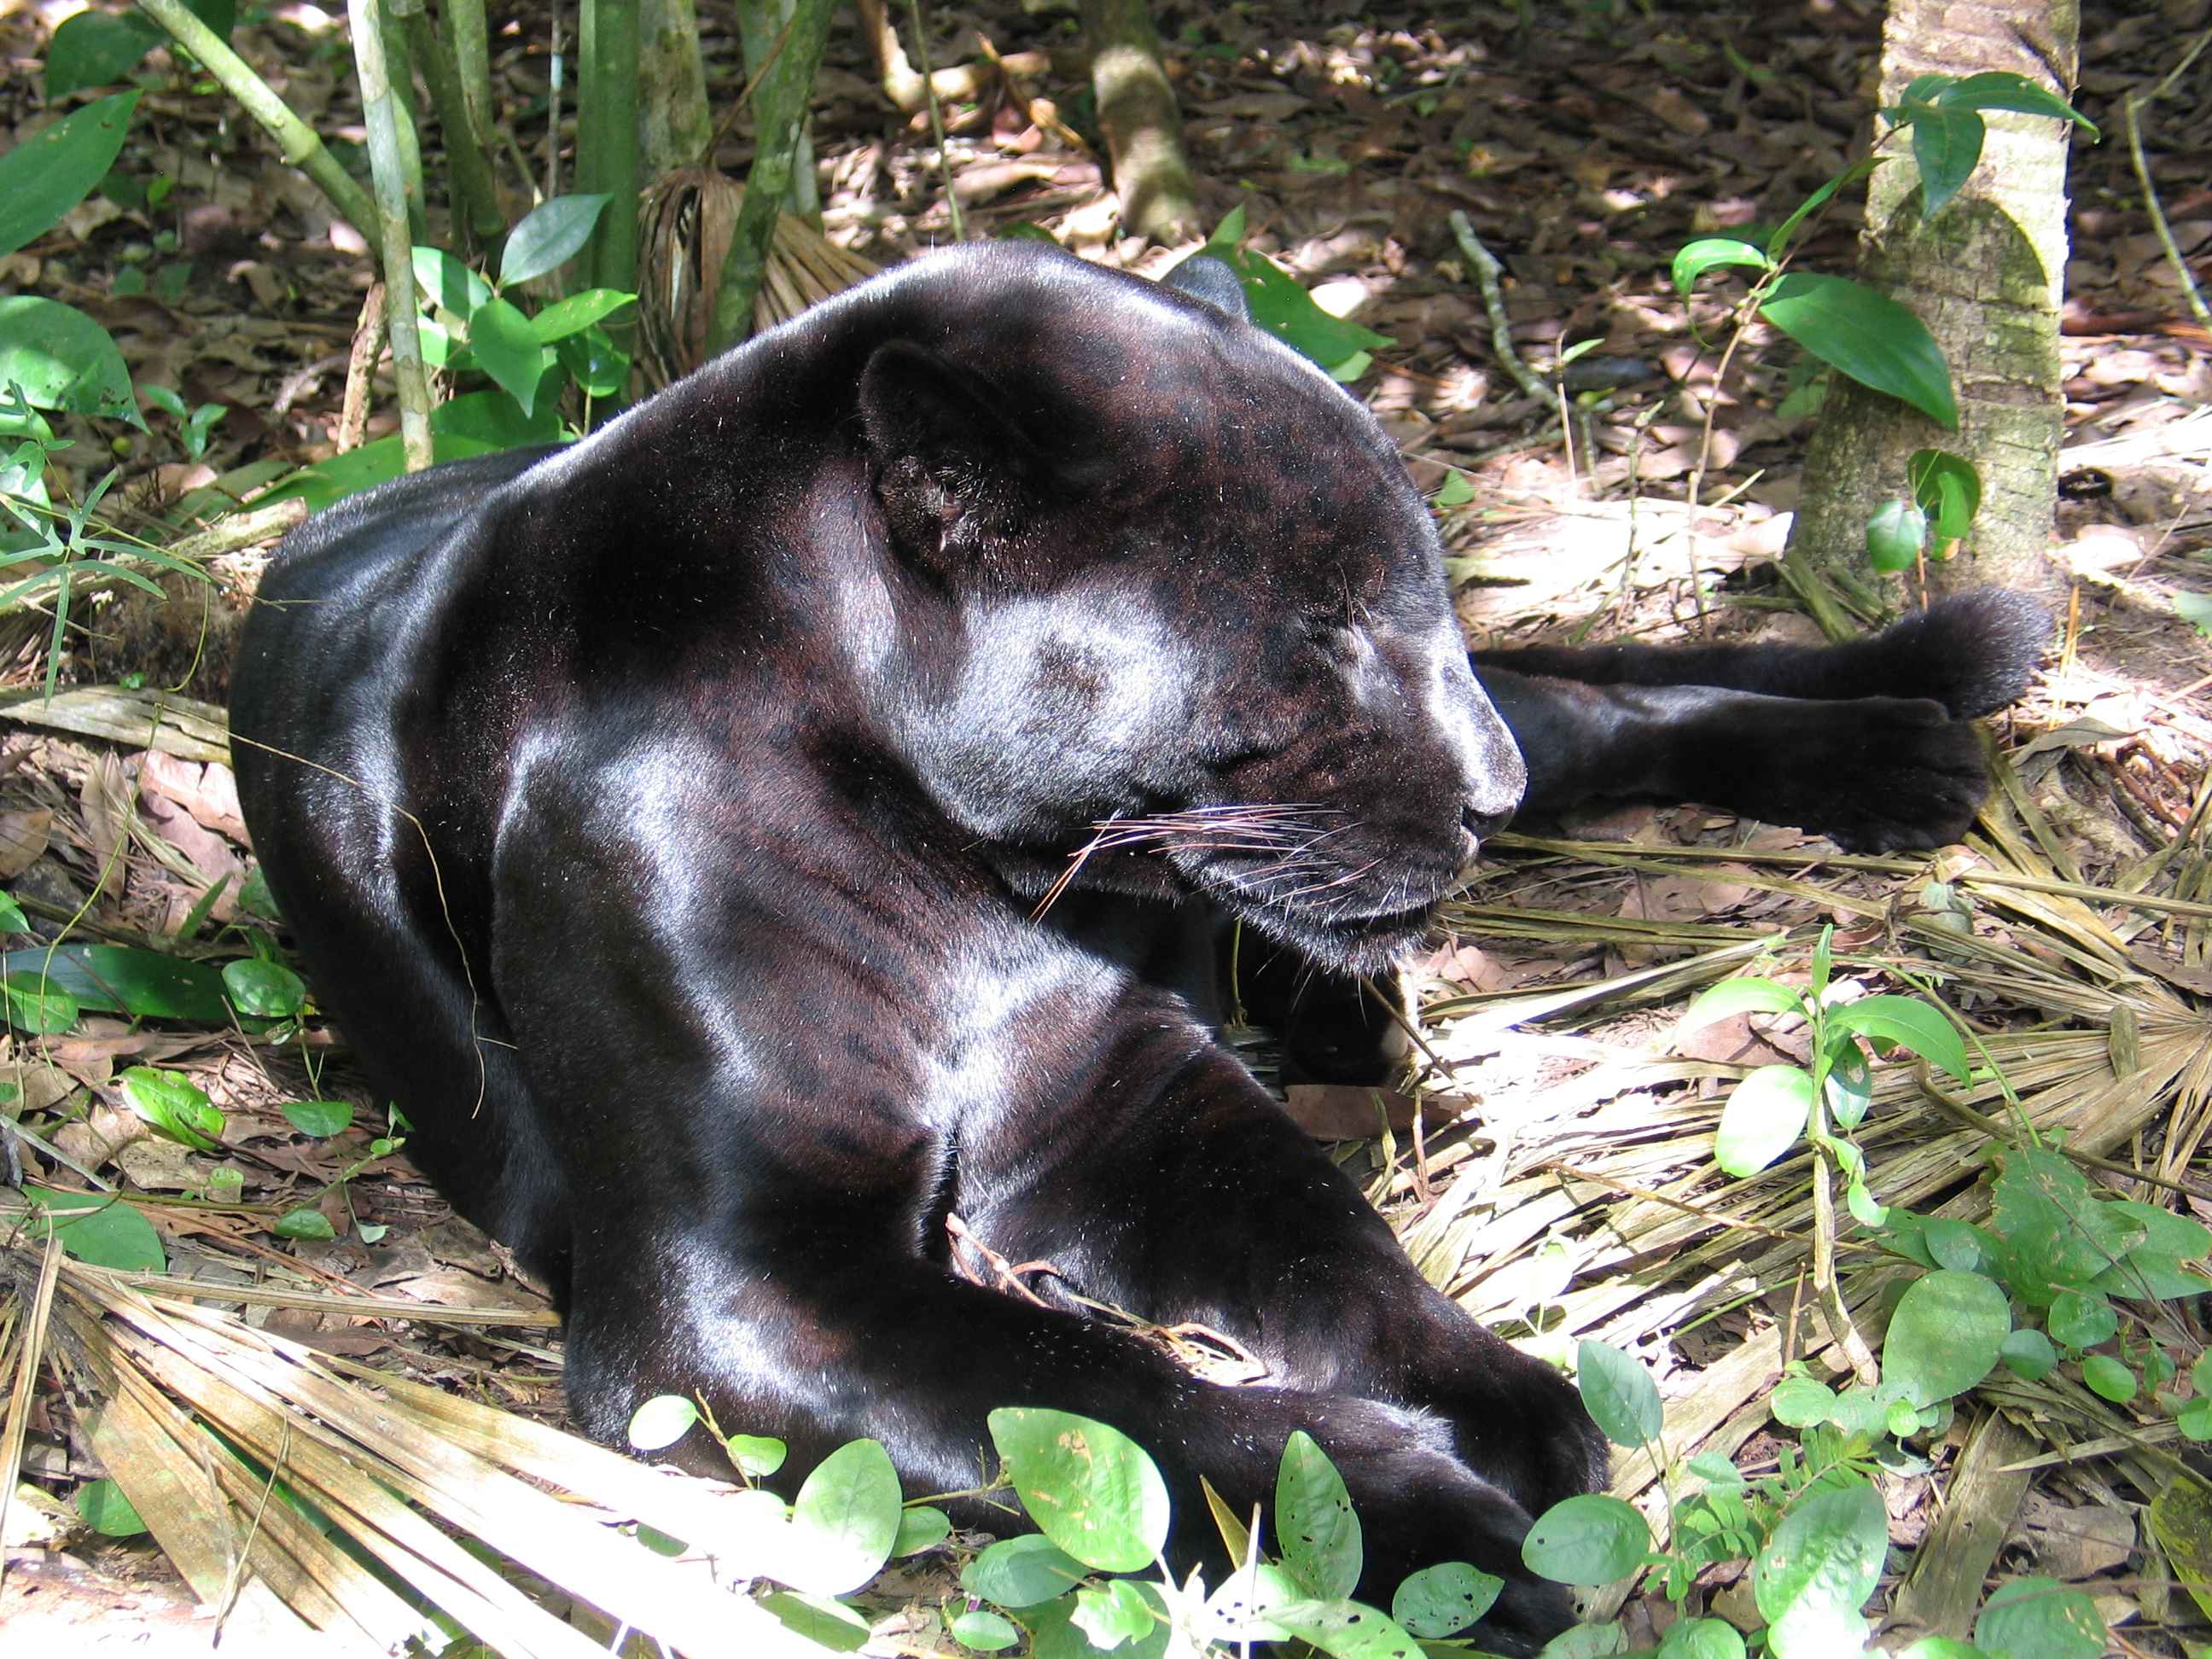 Black Jaguar at the Belize Zoo '07